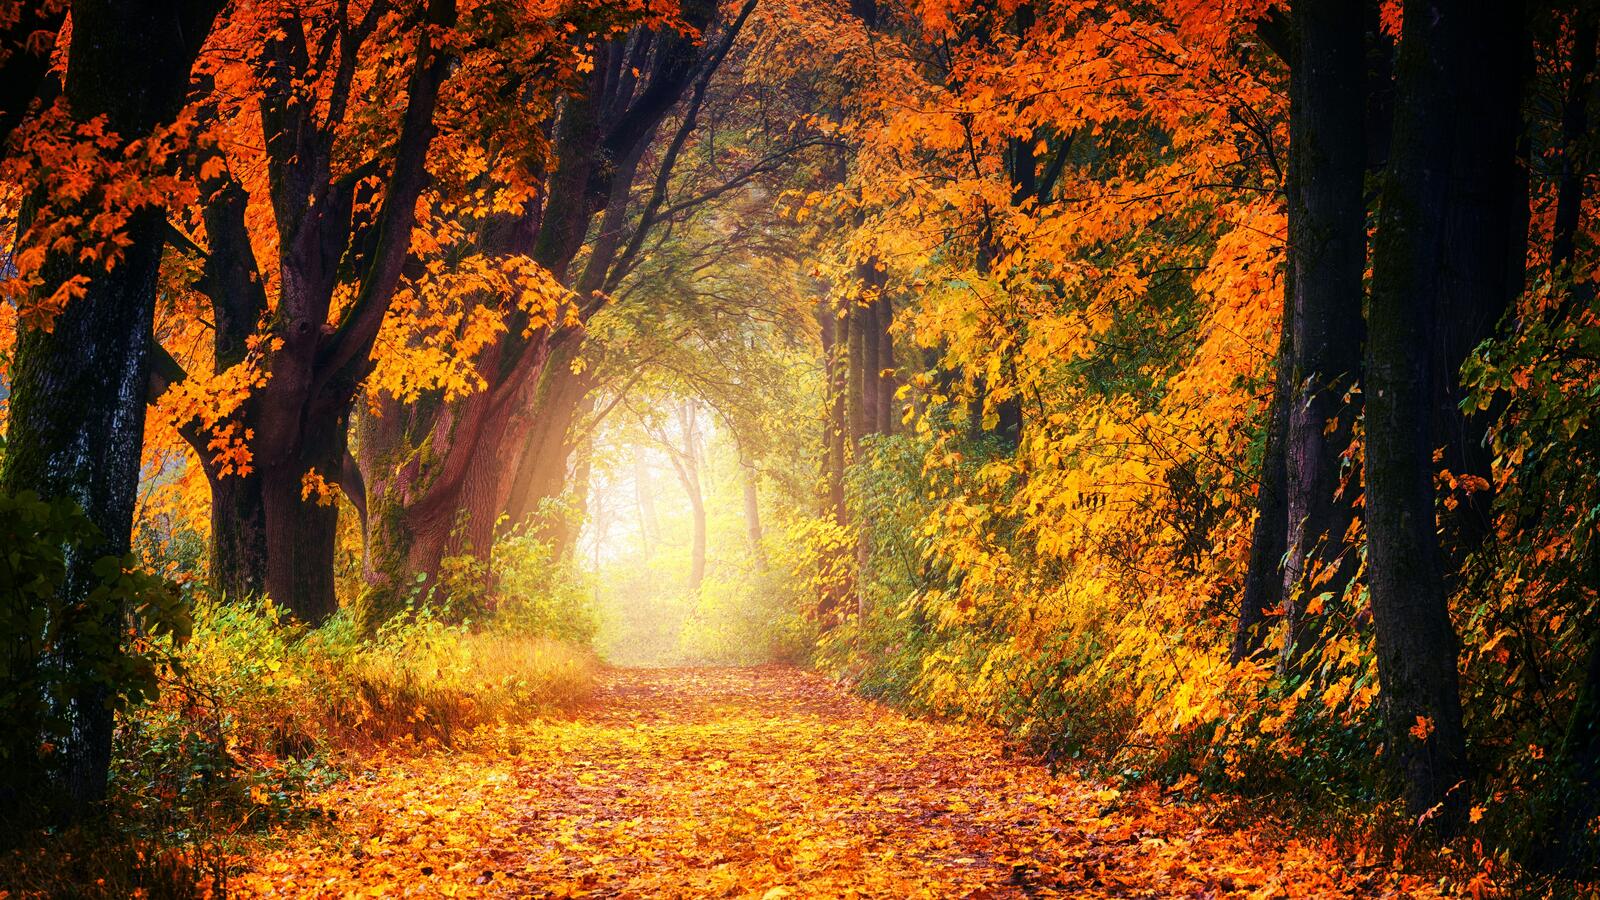 Бесплатное фото Лесная дорога с опавшими золотыми листьями